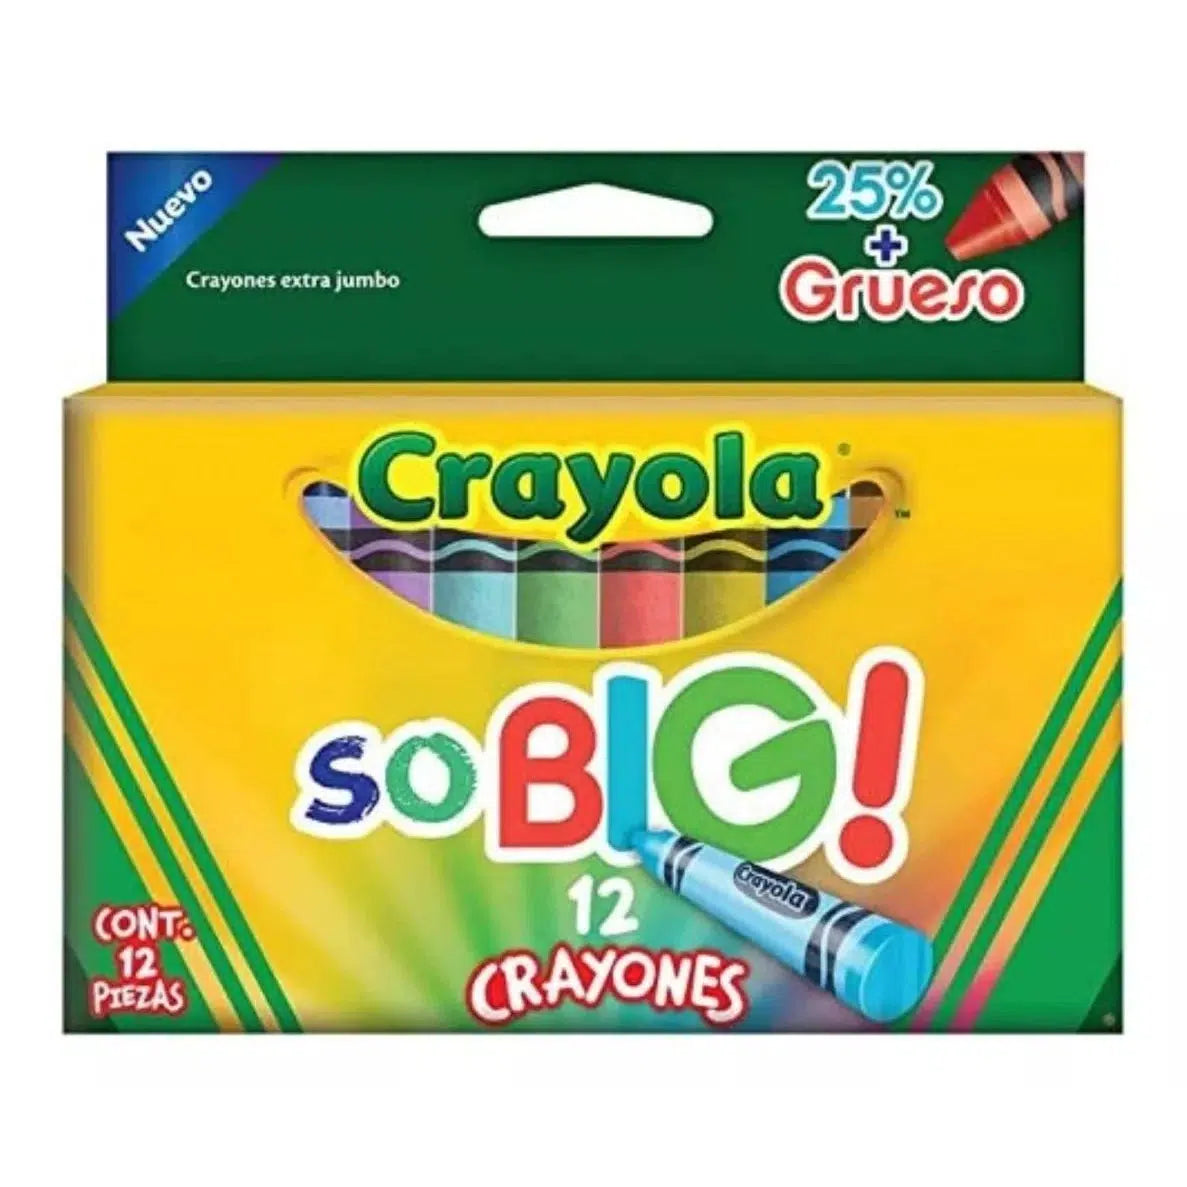 Crayones Extra Jumbo Crayola So Big Estuche Con 12 Colores